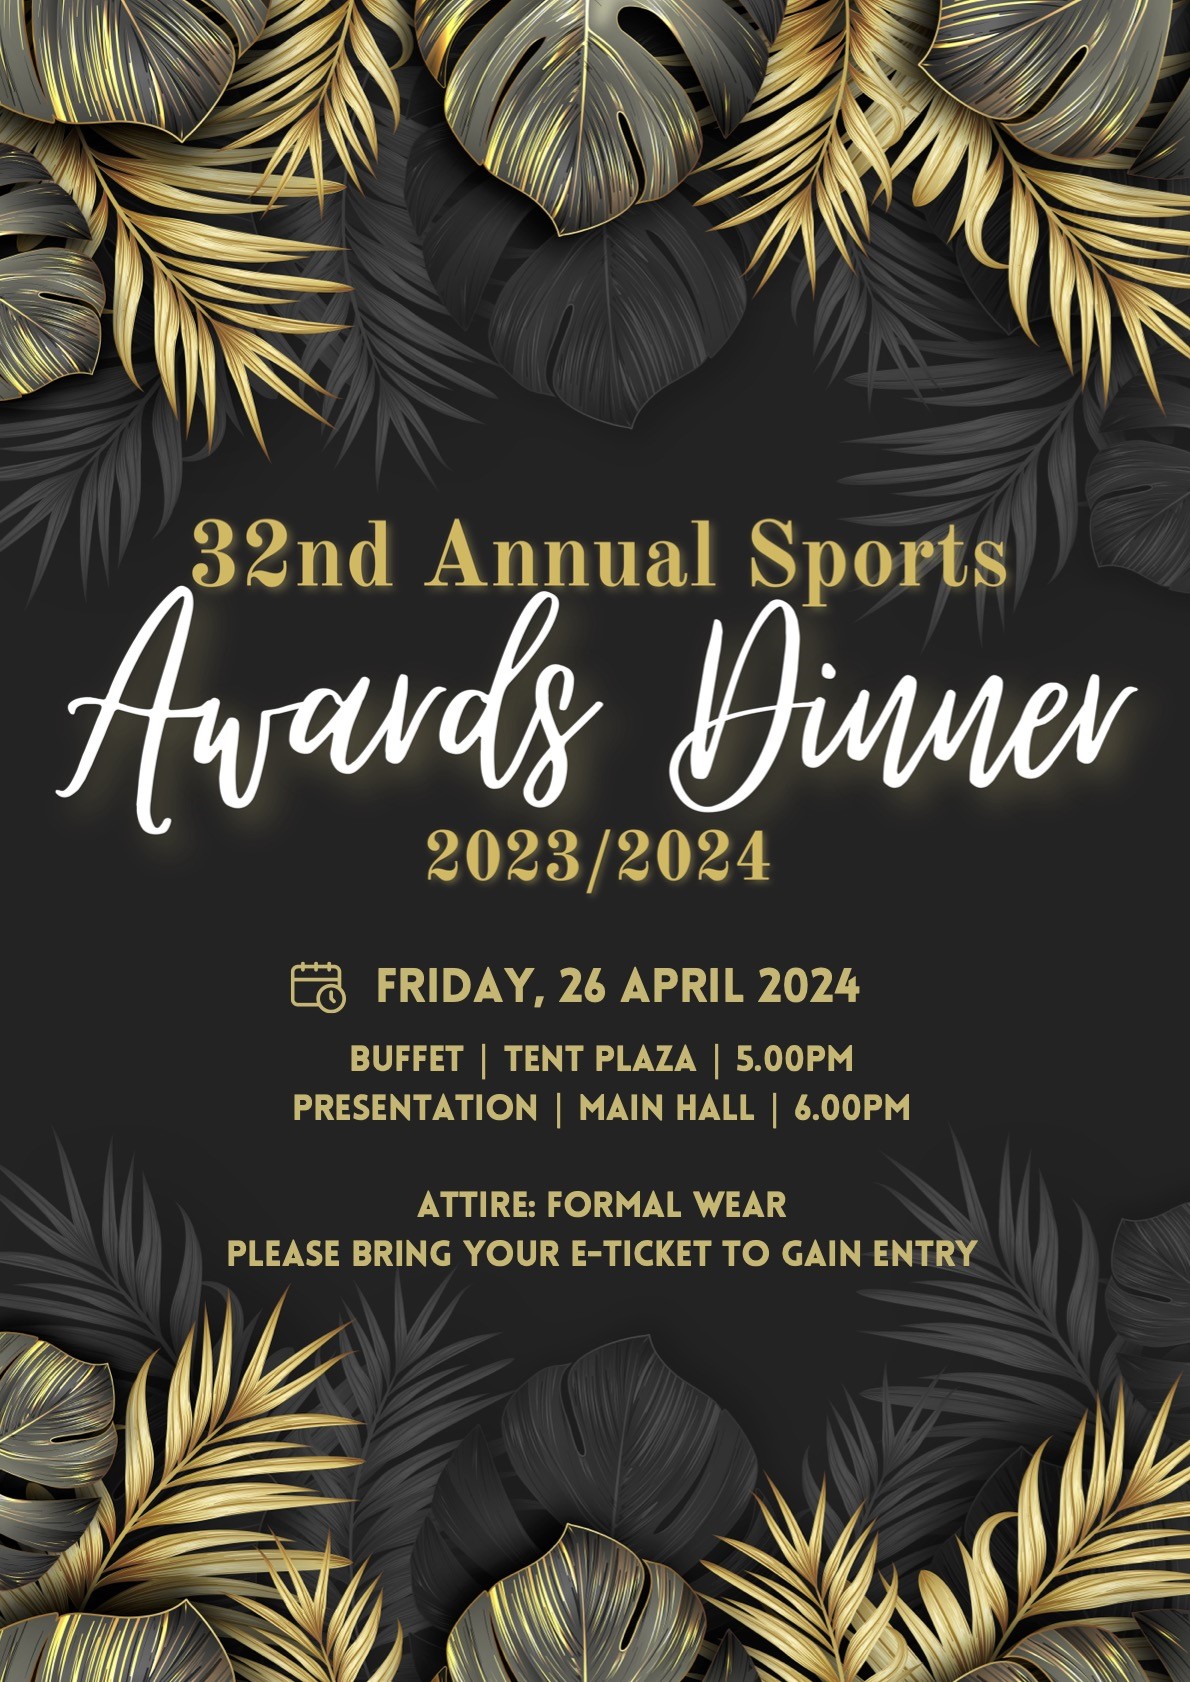 Dover 32nd Annual Sports Awards Dinner  on avr. 26, 17:00@Main Hall - Dover Campus - Achetez des billets et obtenez des informations surUWCSEA Ticket Hub uwcsea